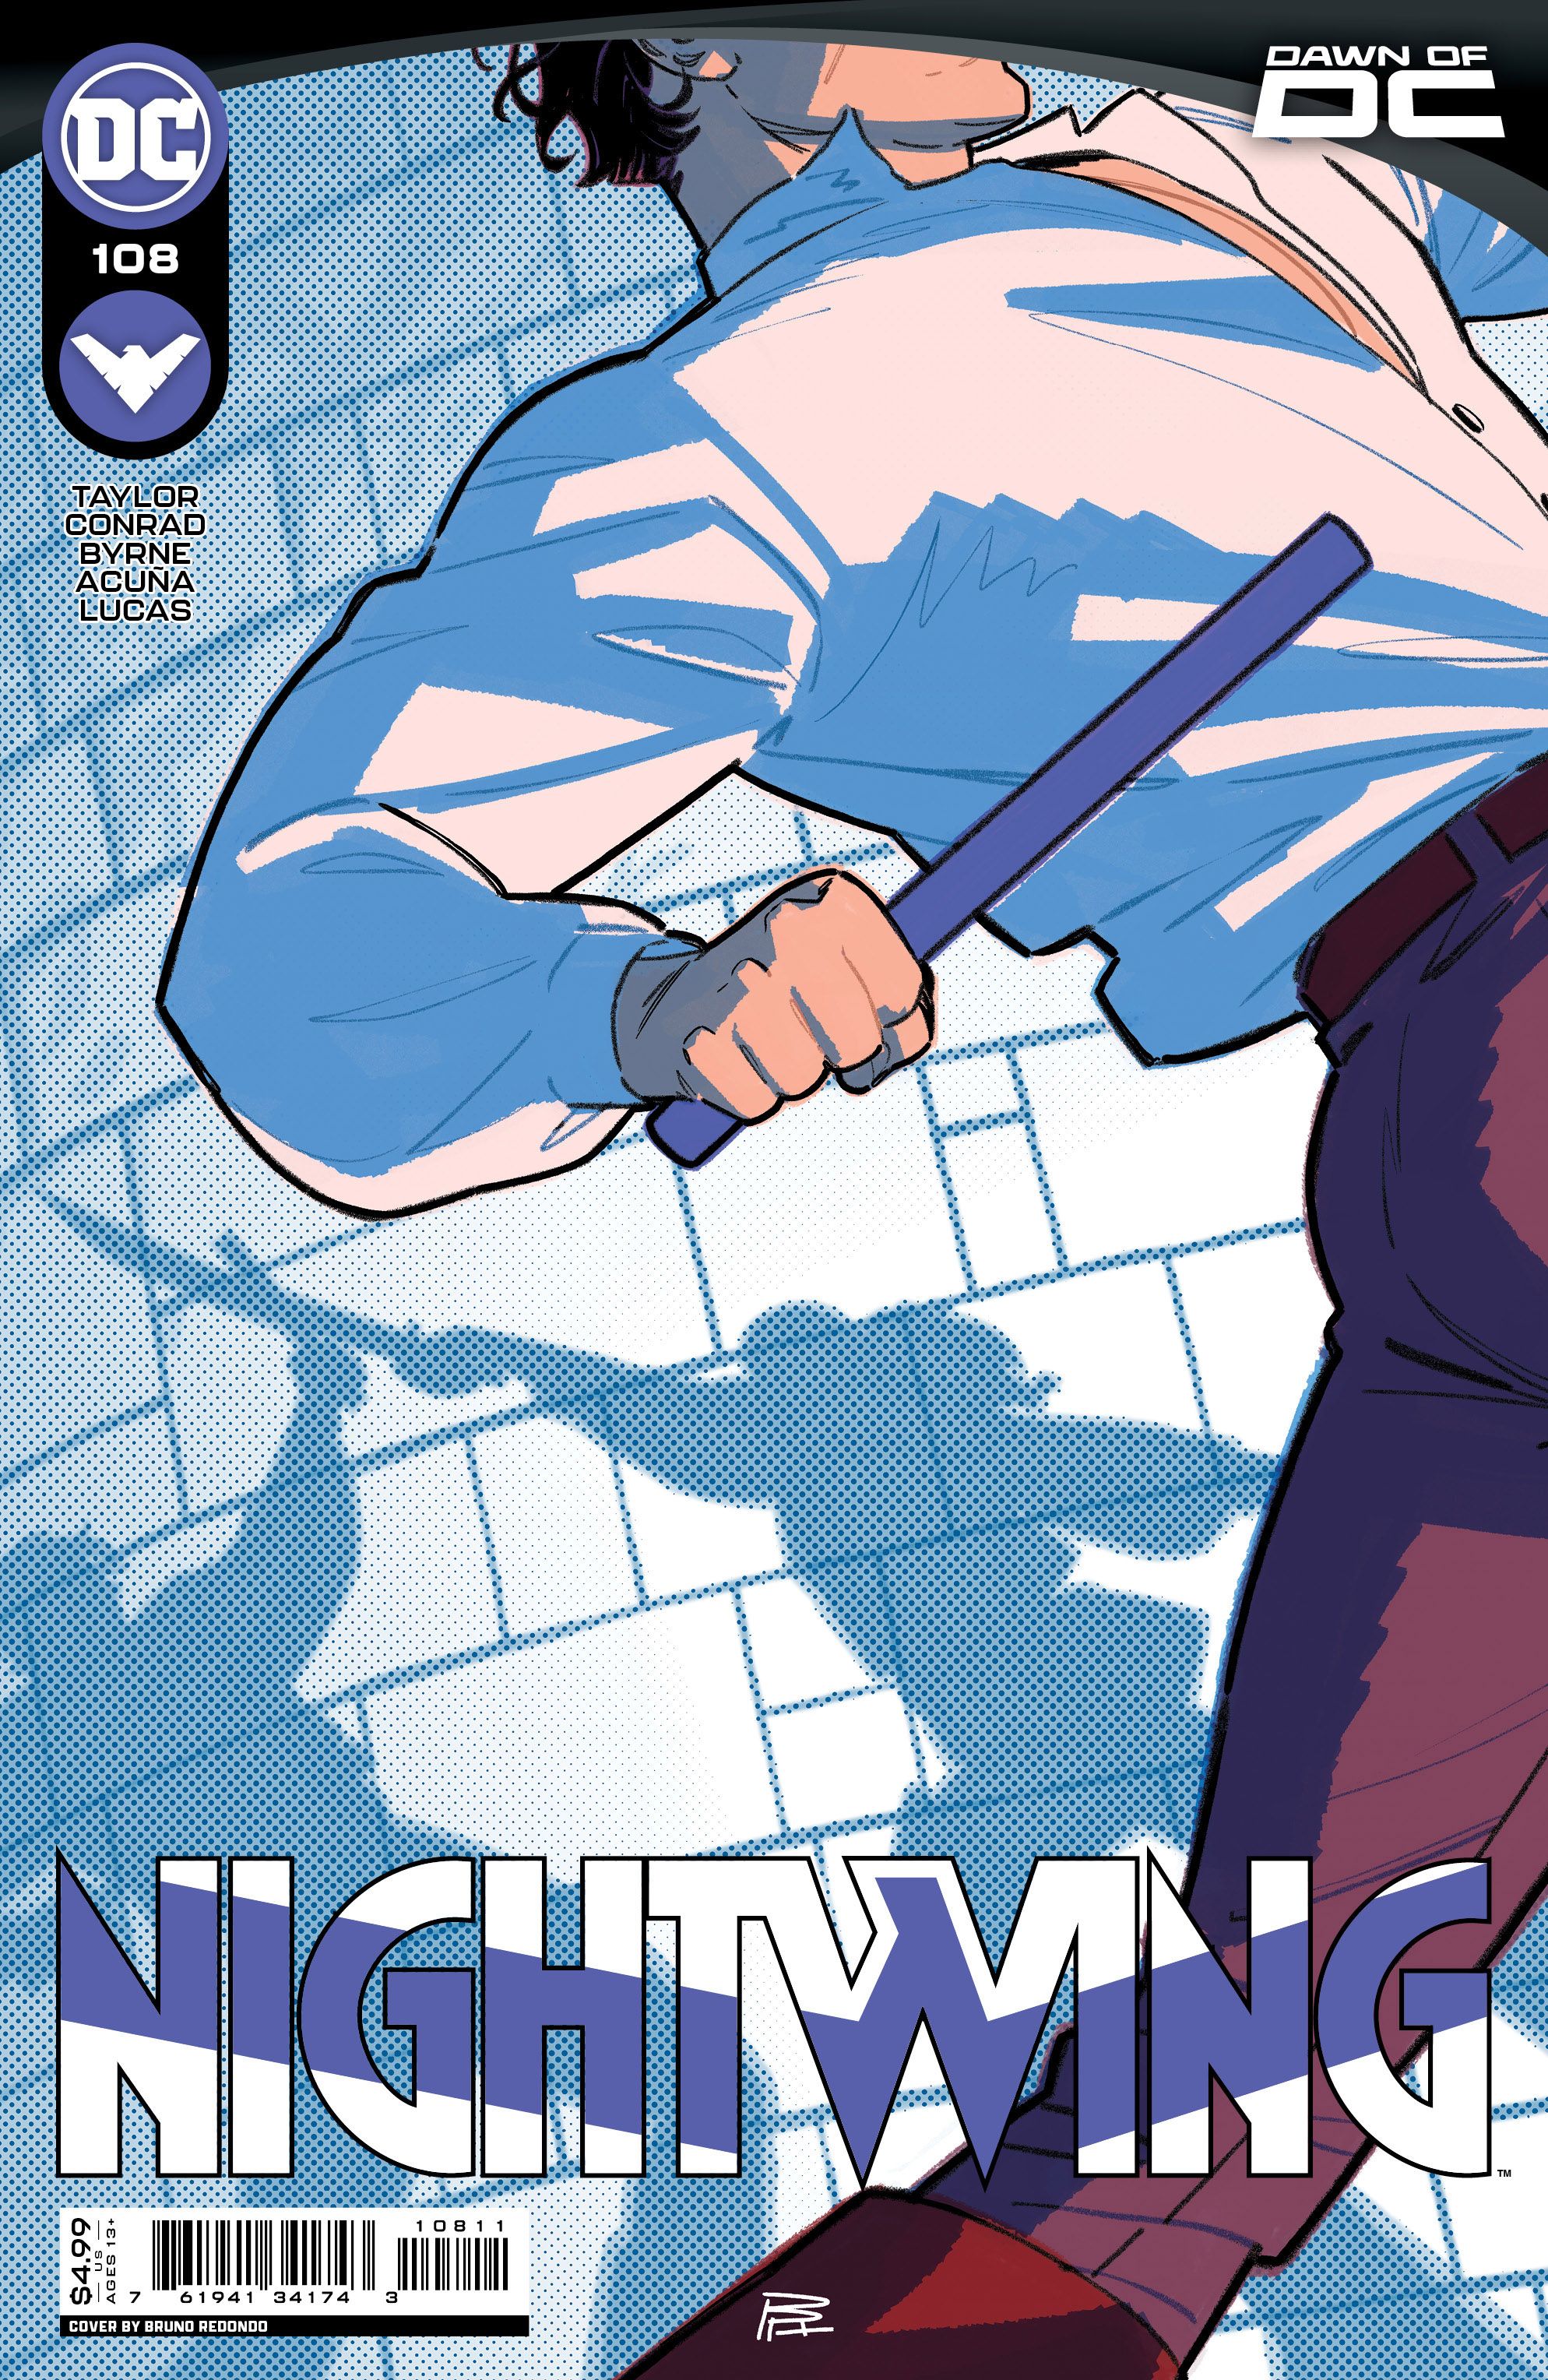 Nightwing #108 Comic